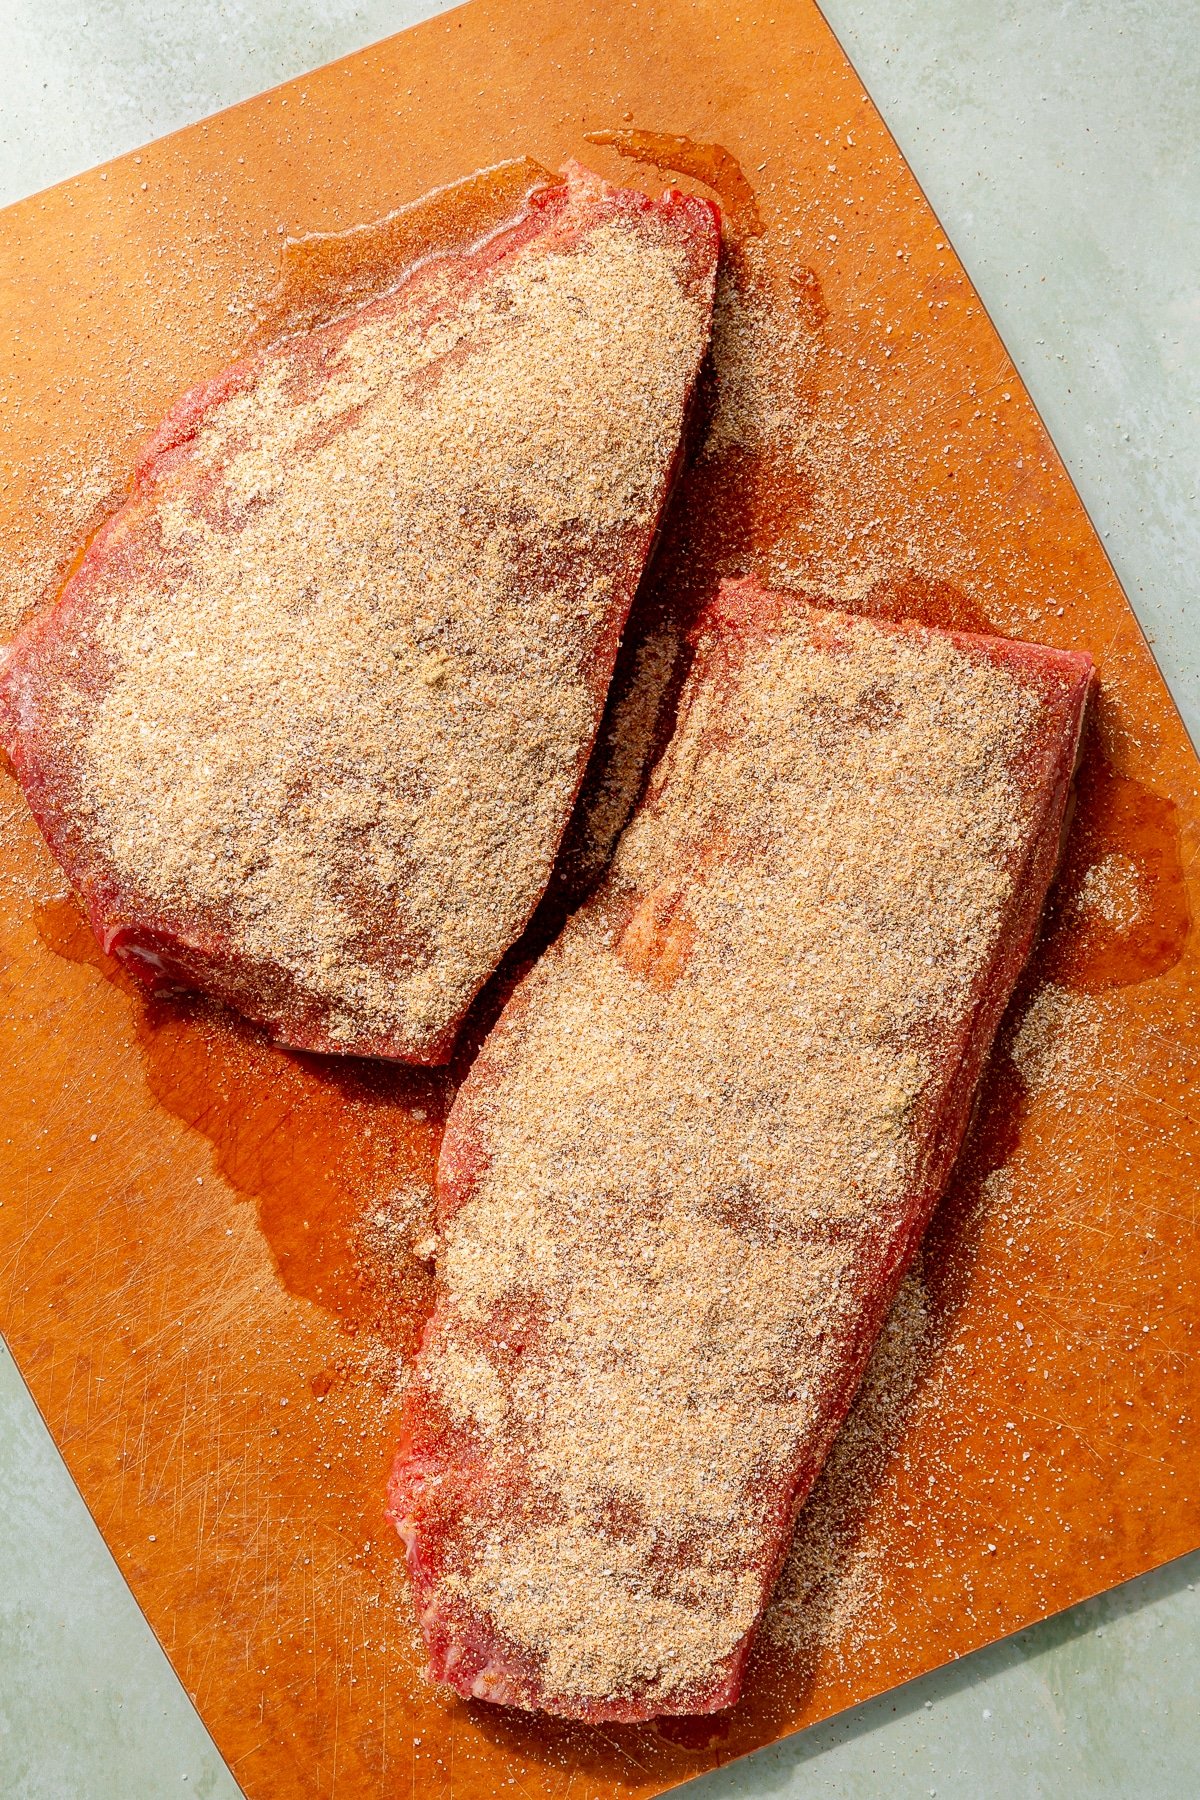 Fully seasoned steaks sit on an orange cutting board.